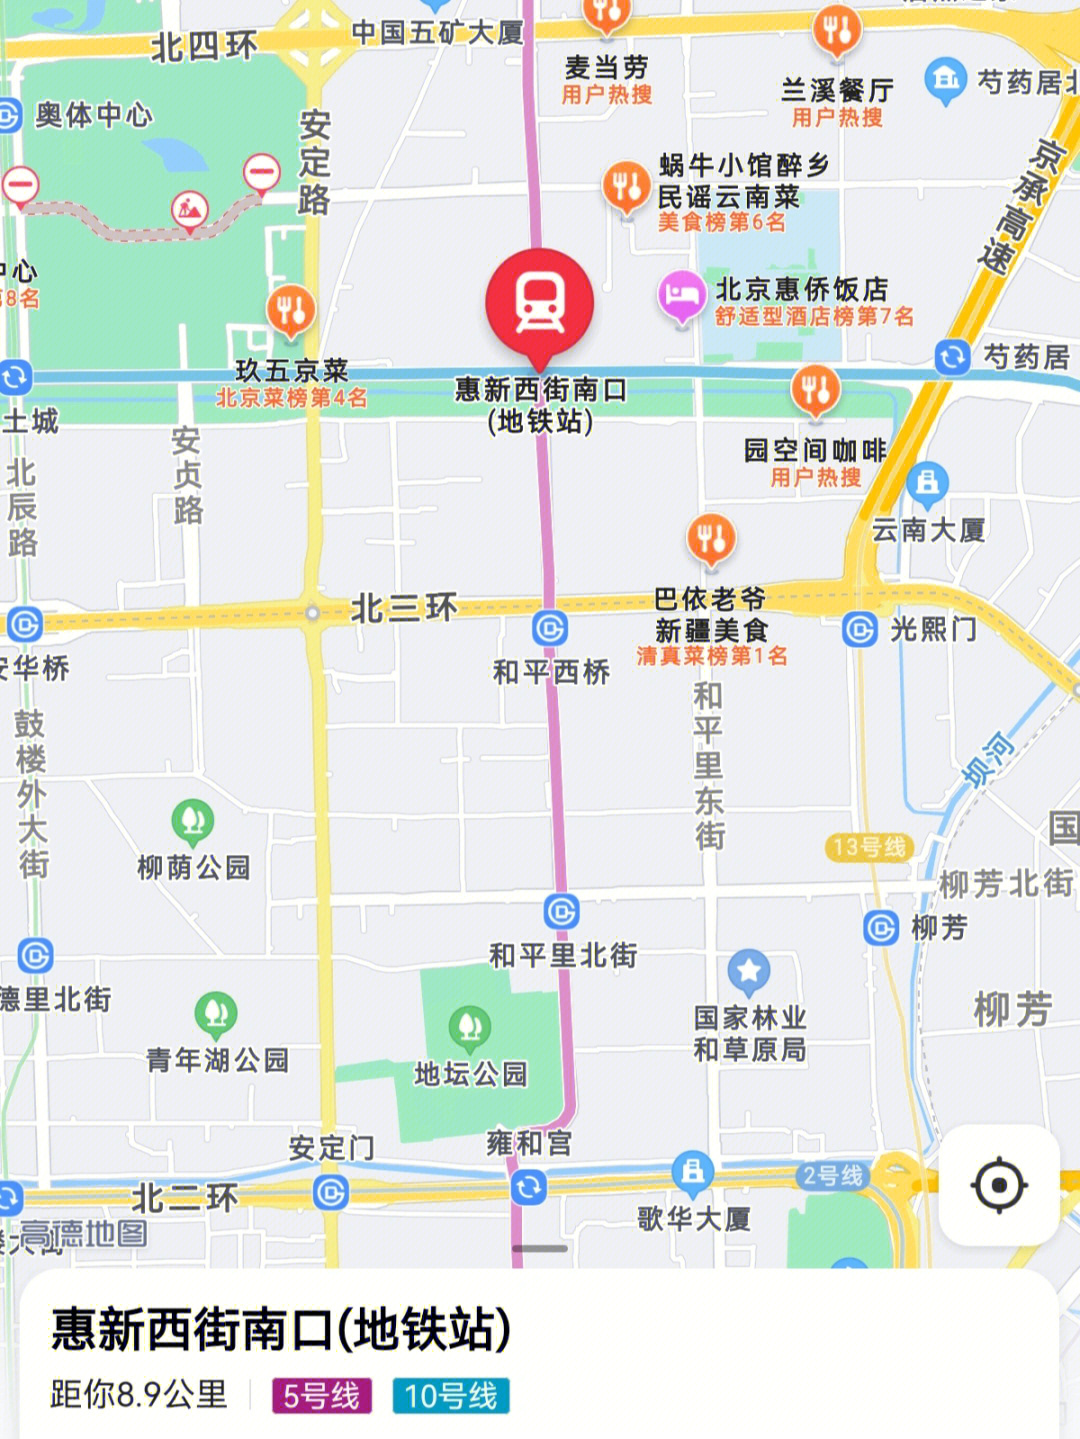 展展子北京看房笔记6—惠新西街南口区域